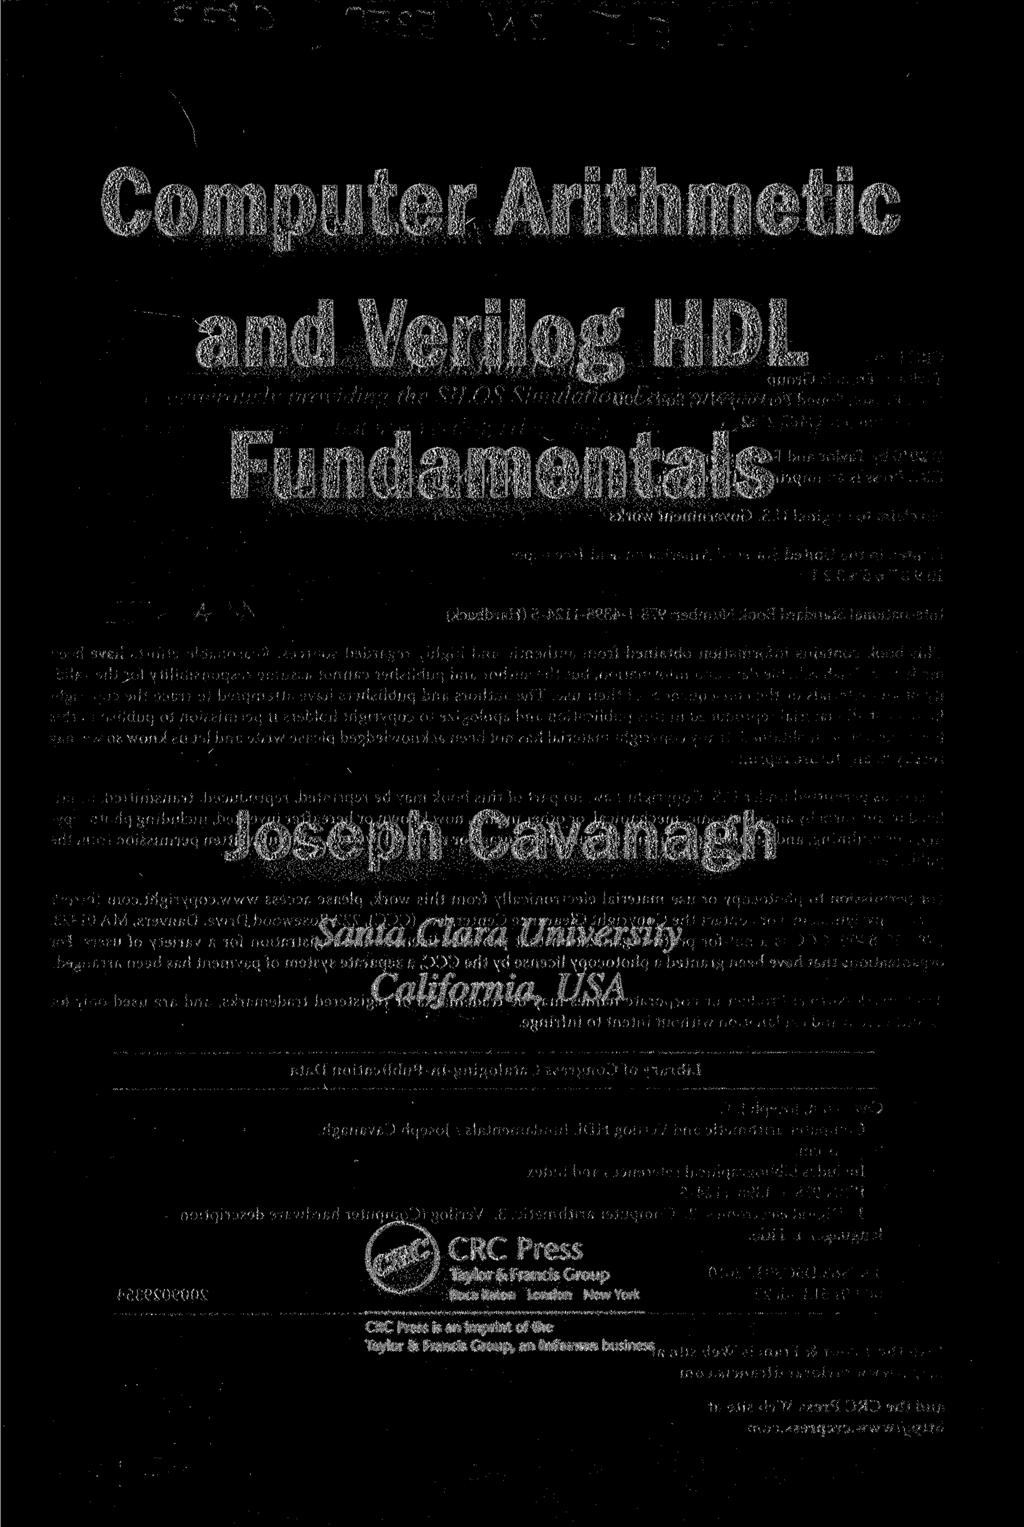 Computer Arithmetic andveriloghdl Fundamentals Joseph Cavanagh Santa Clara University California, USA ( r ec) CRC Press vf J